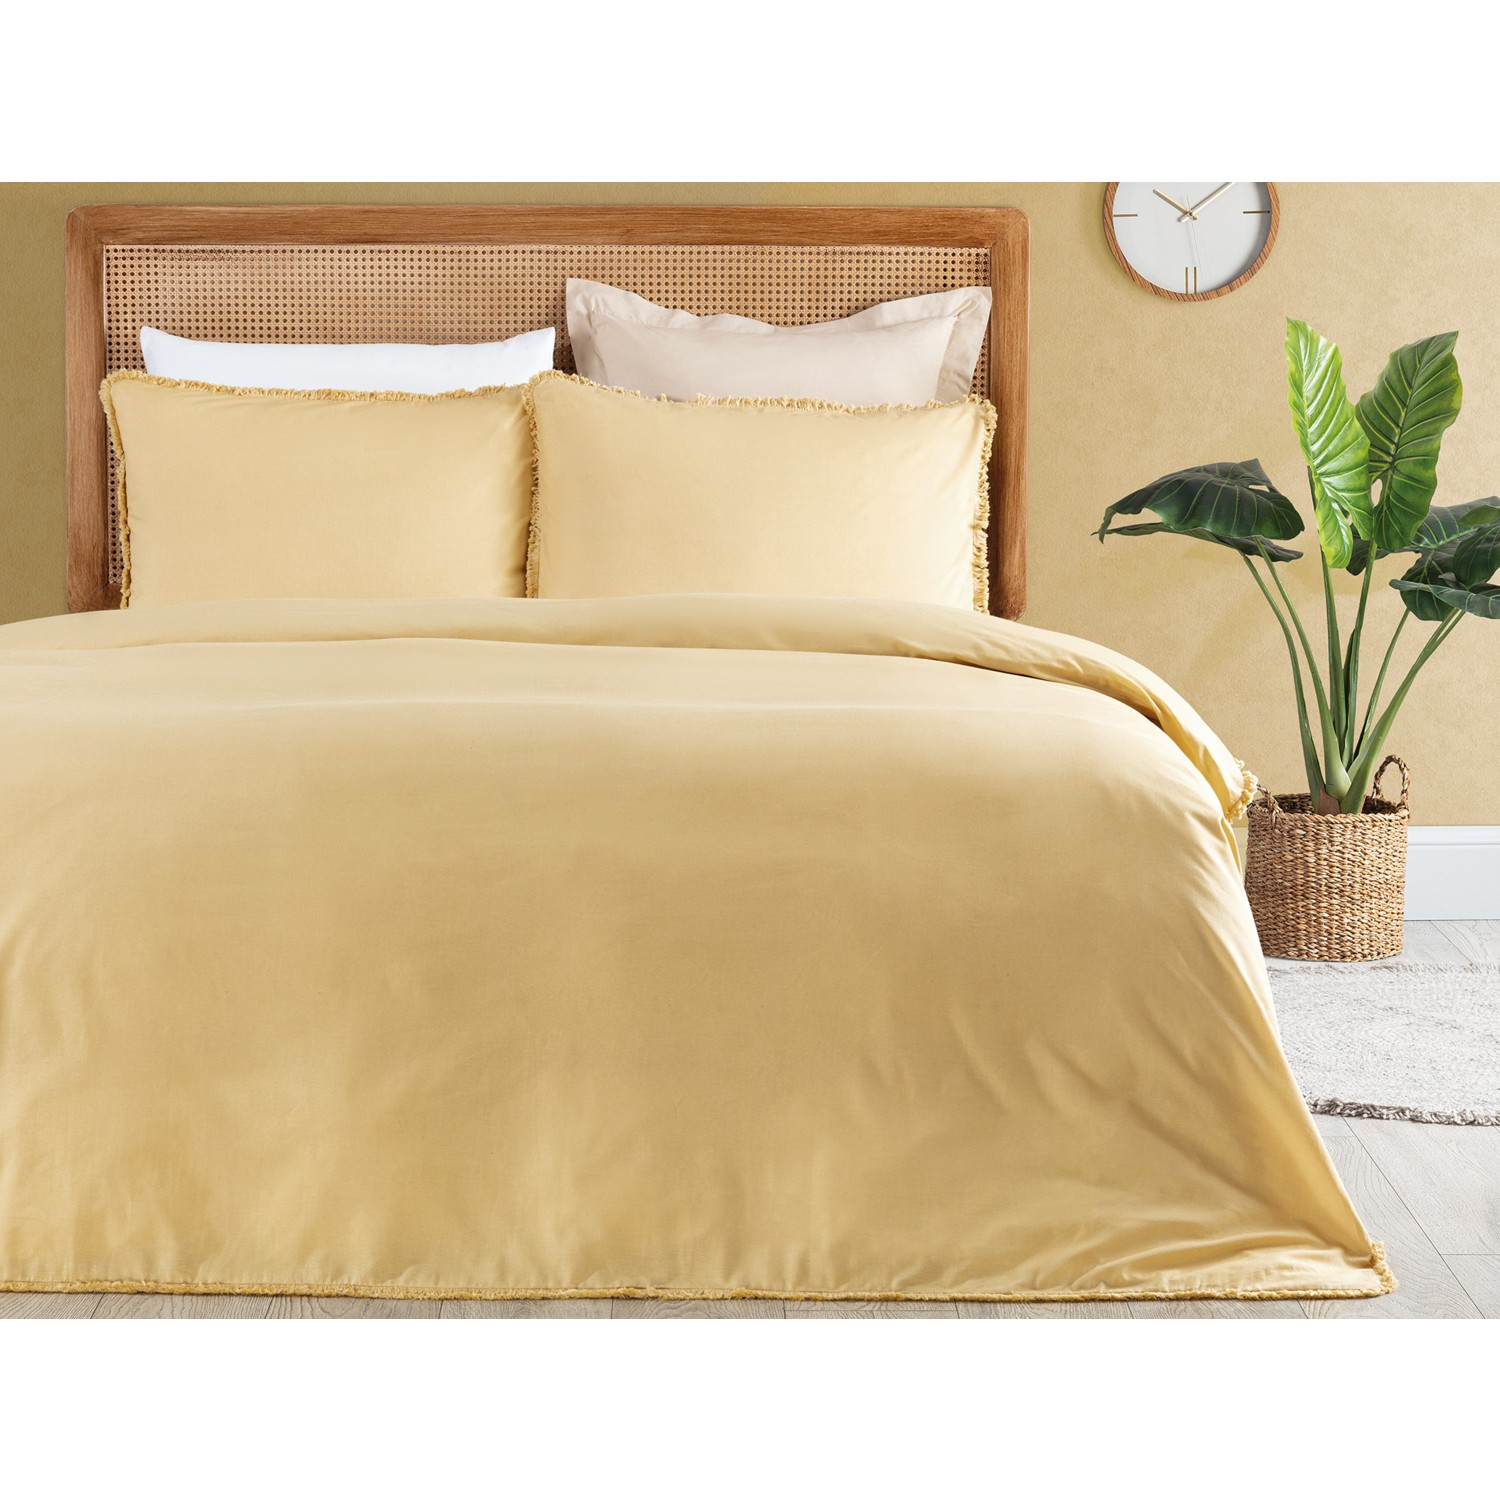 Комплект постельного белья с кисточками размера King Size Madame Coco Sona